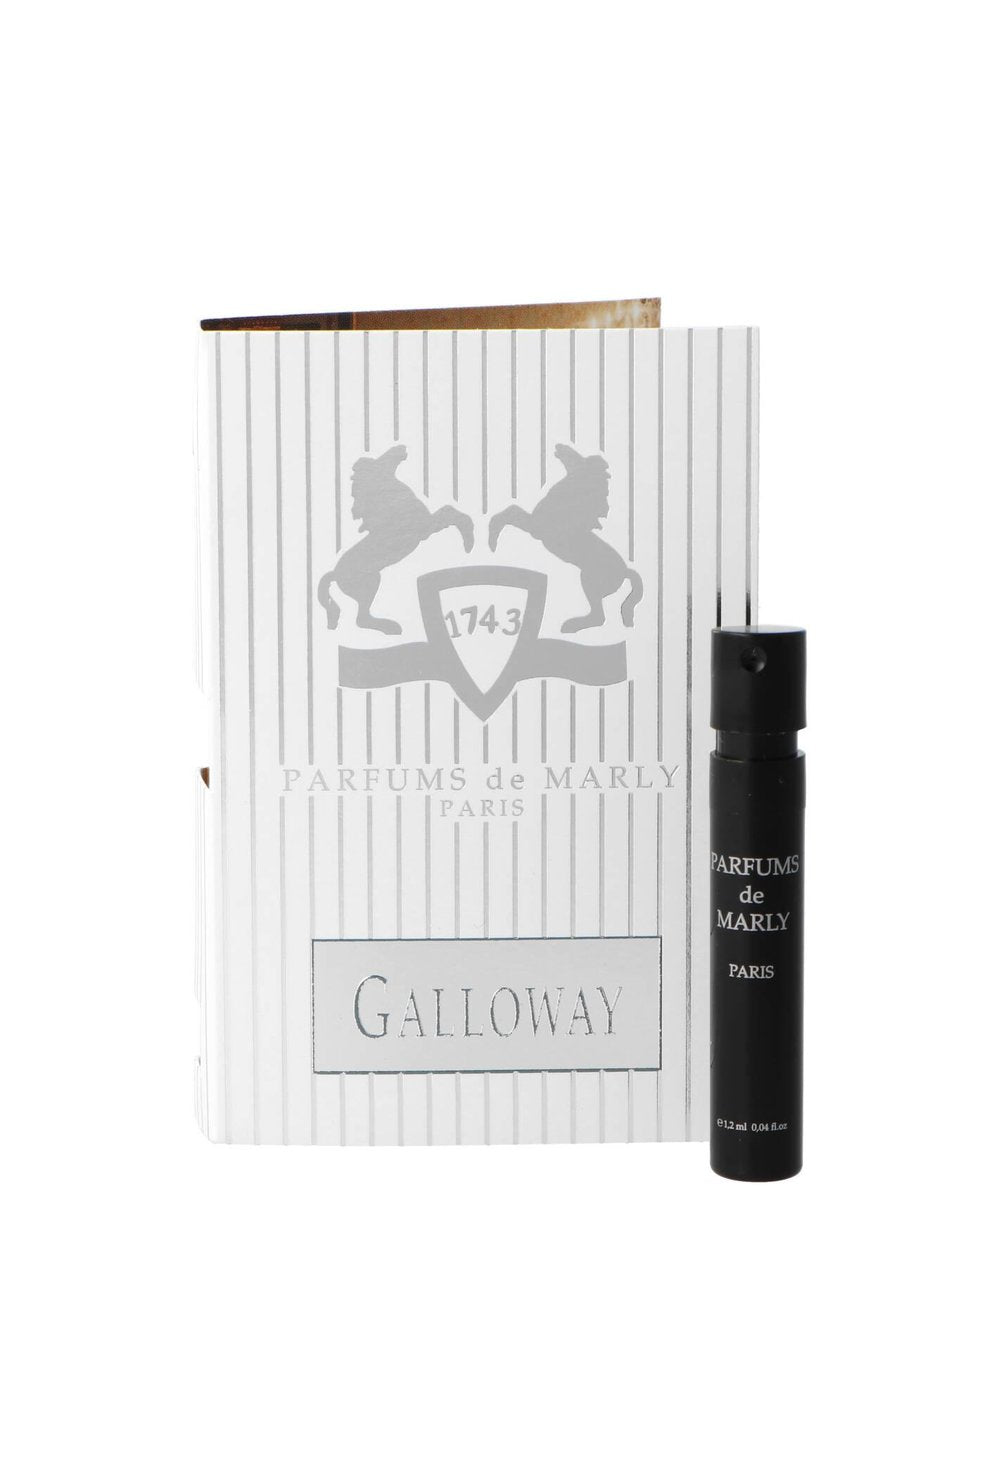 Parfums de Marly Galloway 1.2ml 0.04 fl.oz επίση μο είYμα aαρώματος, Parfums de Marly Galloway 1.2ml 0.04 fl.oz oficJalny д ° C ~ .oz uradni vzorec parfuma